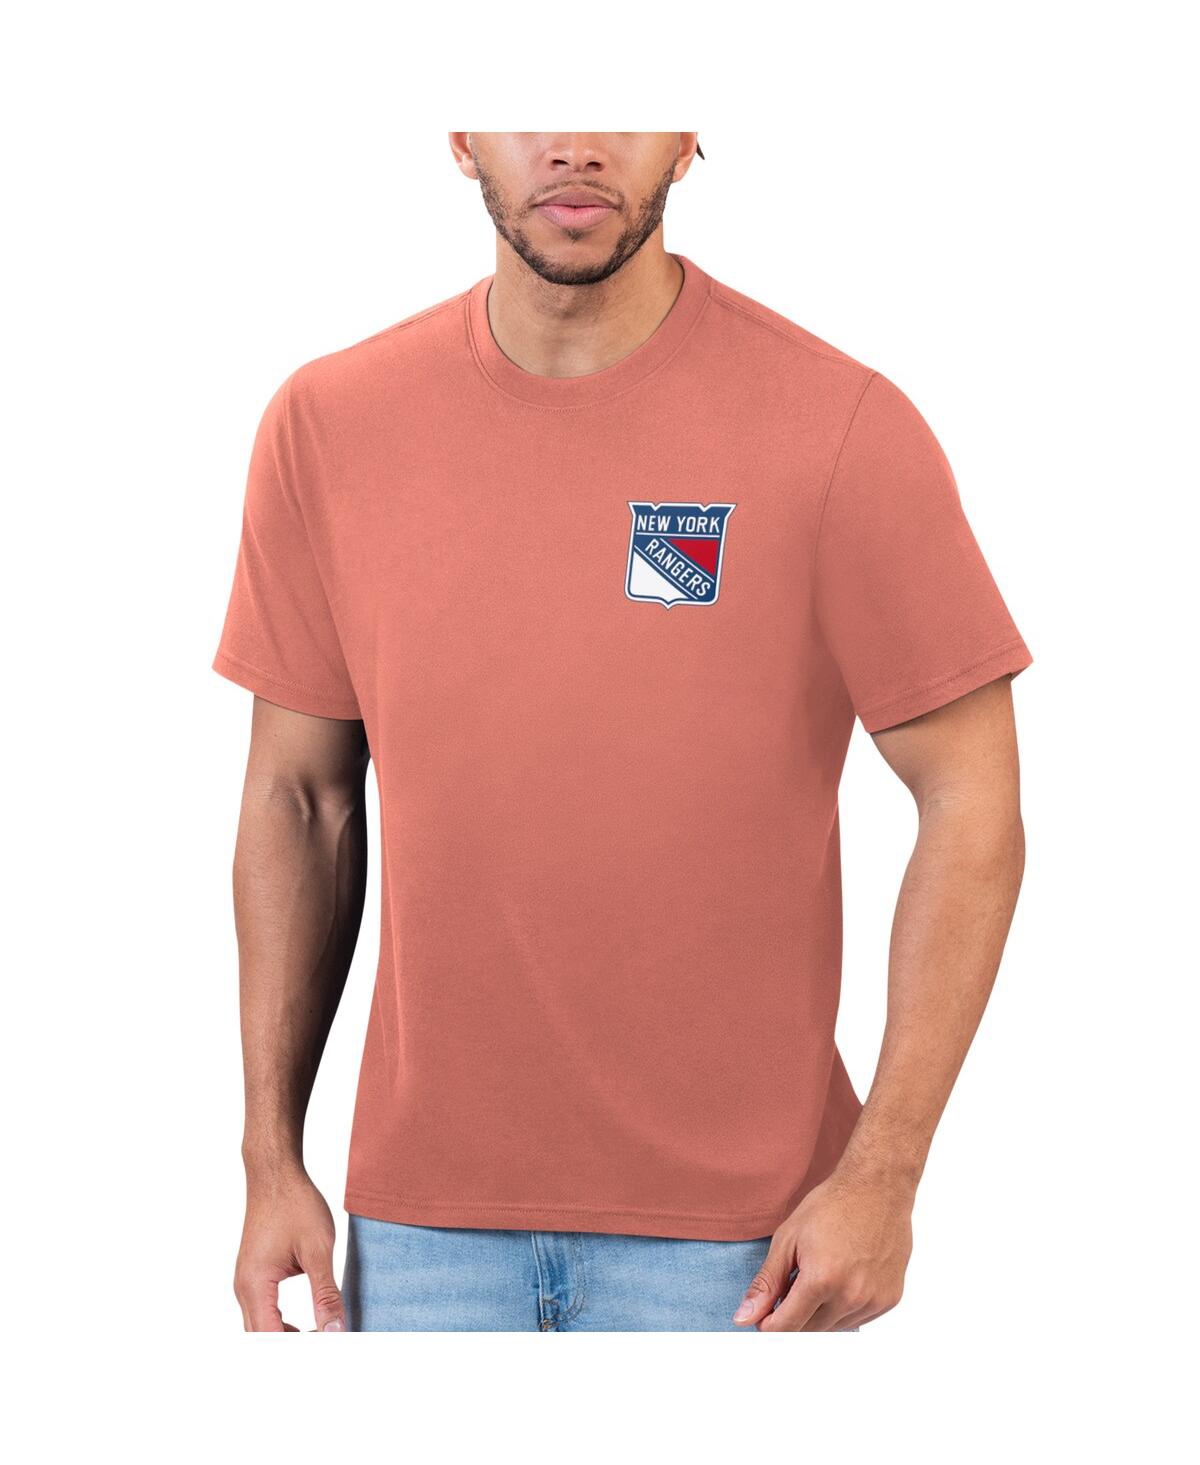 Shop Margaritaville Men's Orange New York Rangers T-shirt